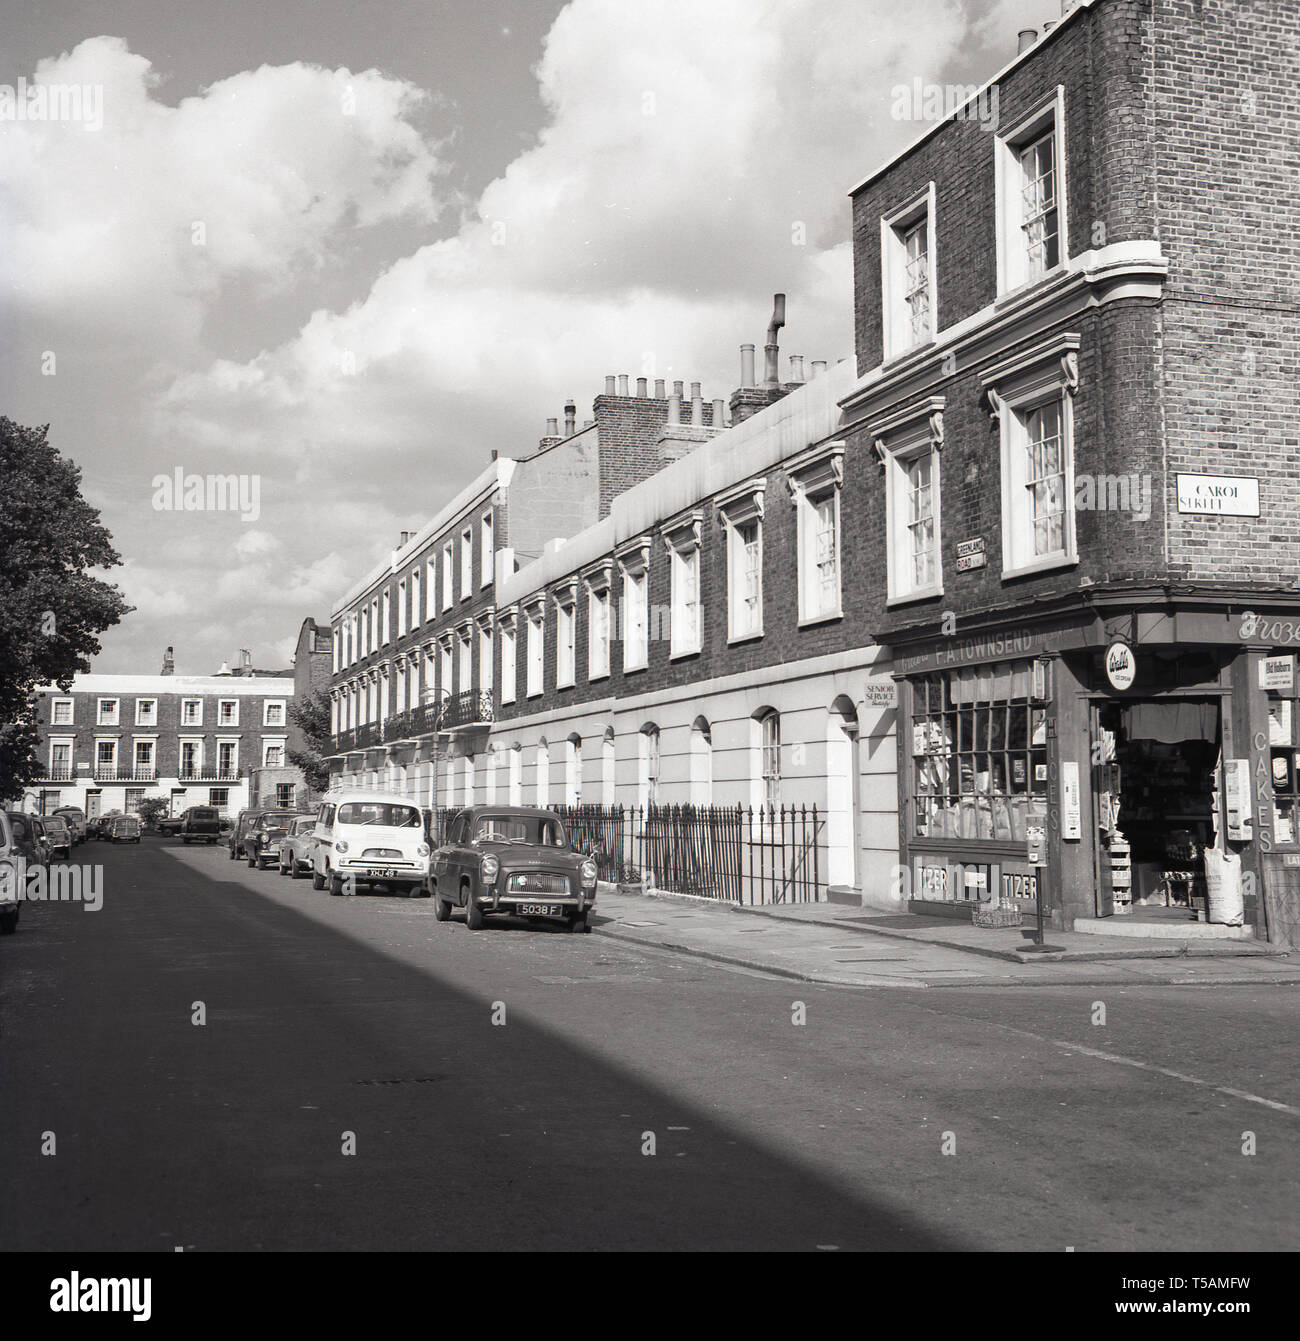 Années 1960, historique, vue du Groenland Road, London, NW1, avec sa terrasse géorgienne et l'habitation avec le coin boutique, les épiciers et les marchands, F. UN Townsend avec la porte ouverte, vu à la jonction avec Carol Street. Banque D'Images